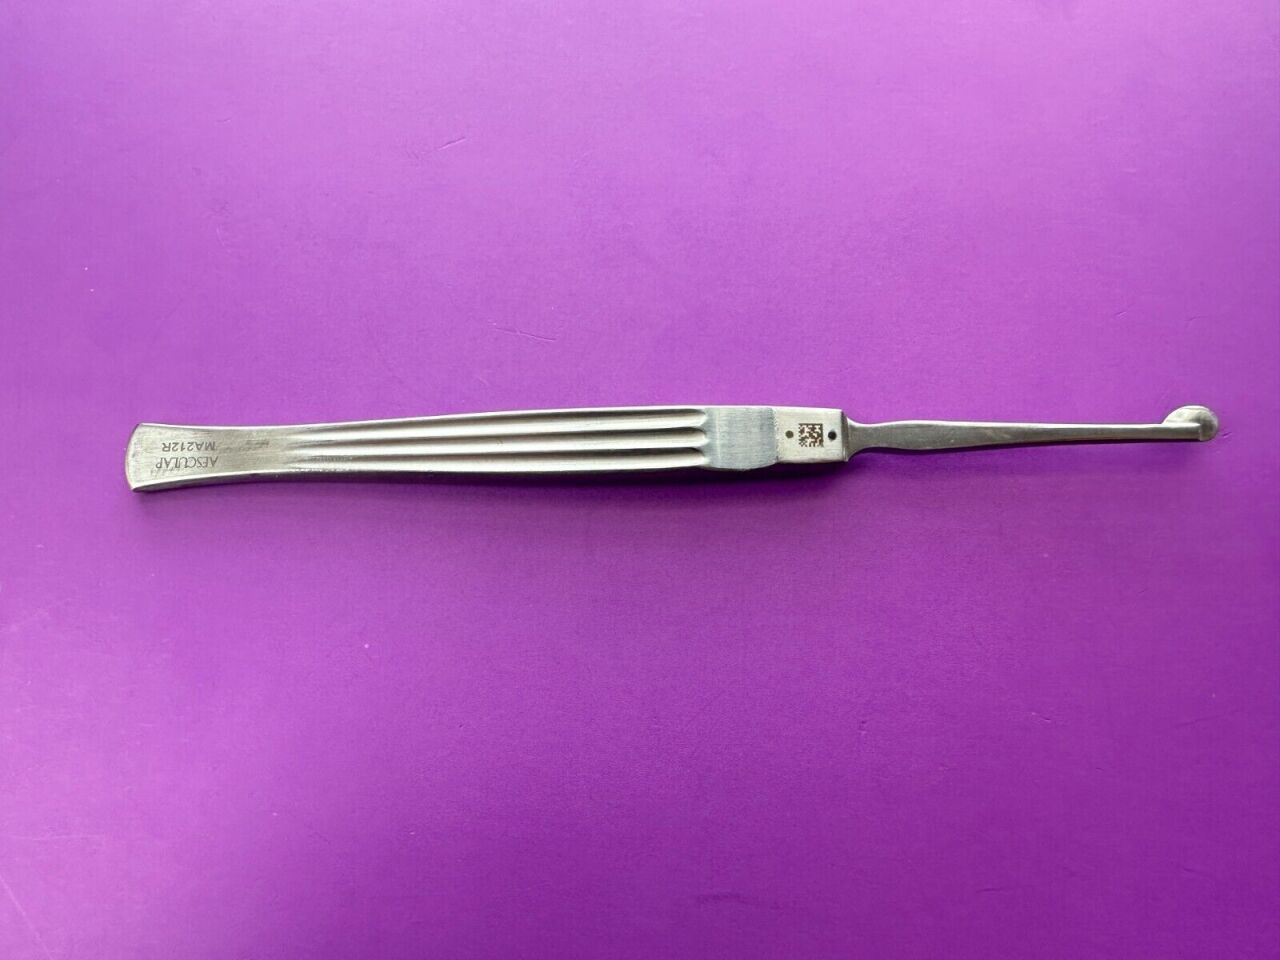 FREER Septum Knife "D" SHAPED 3mm 6 1/8in